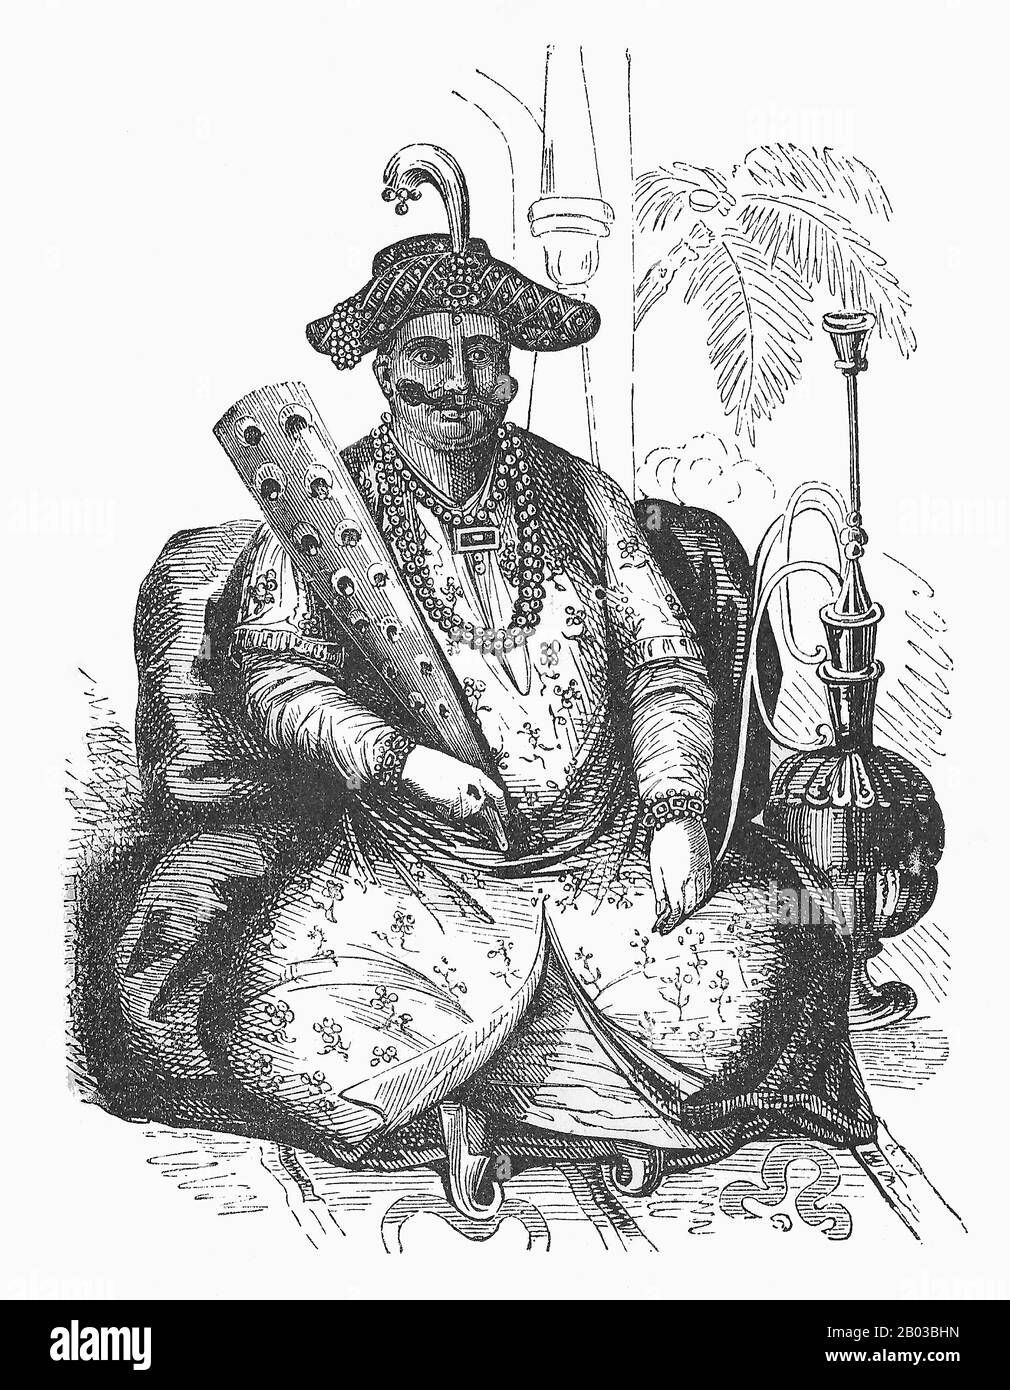 Shuja Shah Abdali Durrani (1785-1842), auch Shoja Shah genannt, war der fünfte Emir Afghanistans, der erstmals von den Jahren von 1803 bis 1809 das Durrani-Reich regierte. Nachdem er 1801 die Absetzung seines Bruders Zaman Shah erzwungen hatte, indem er ihn blenden ließ, proklamierte er sich zum König von Afghanistan, stieg aber erst im Jahr 1803 formell auf, nachdem er seinen Halbbrüder Mahmud Shah besiegt hatte. Stockfoto